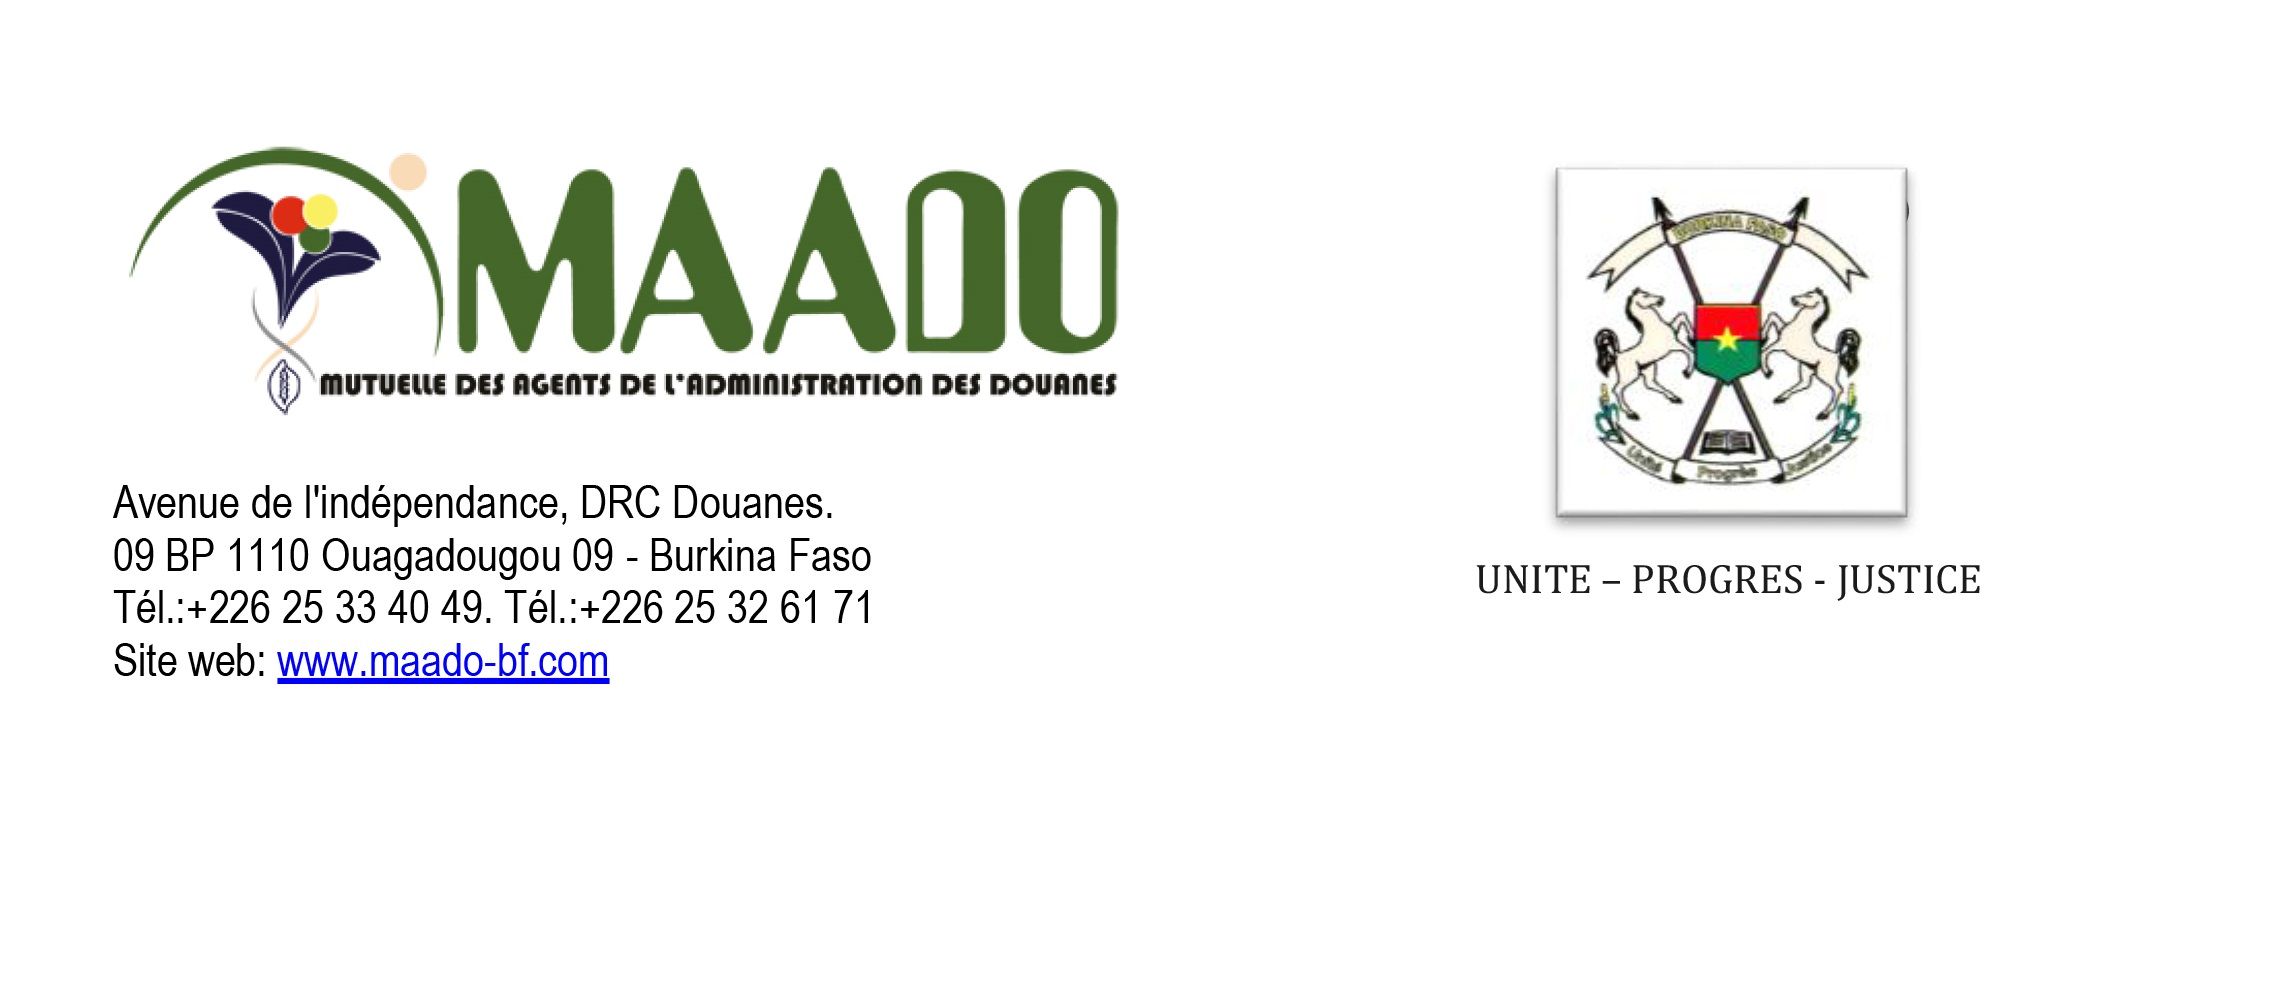 Appel d’offre pour la réalisation et le déploiement d’une application web intégrée de gestion des activités de la MAADO